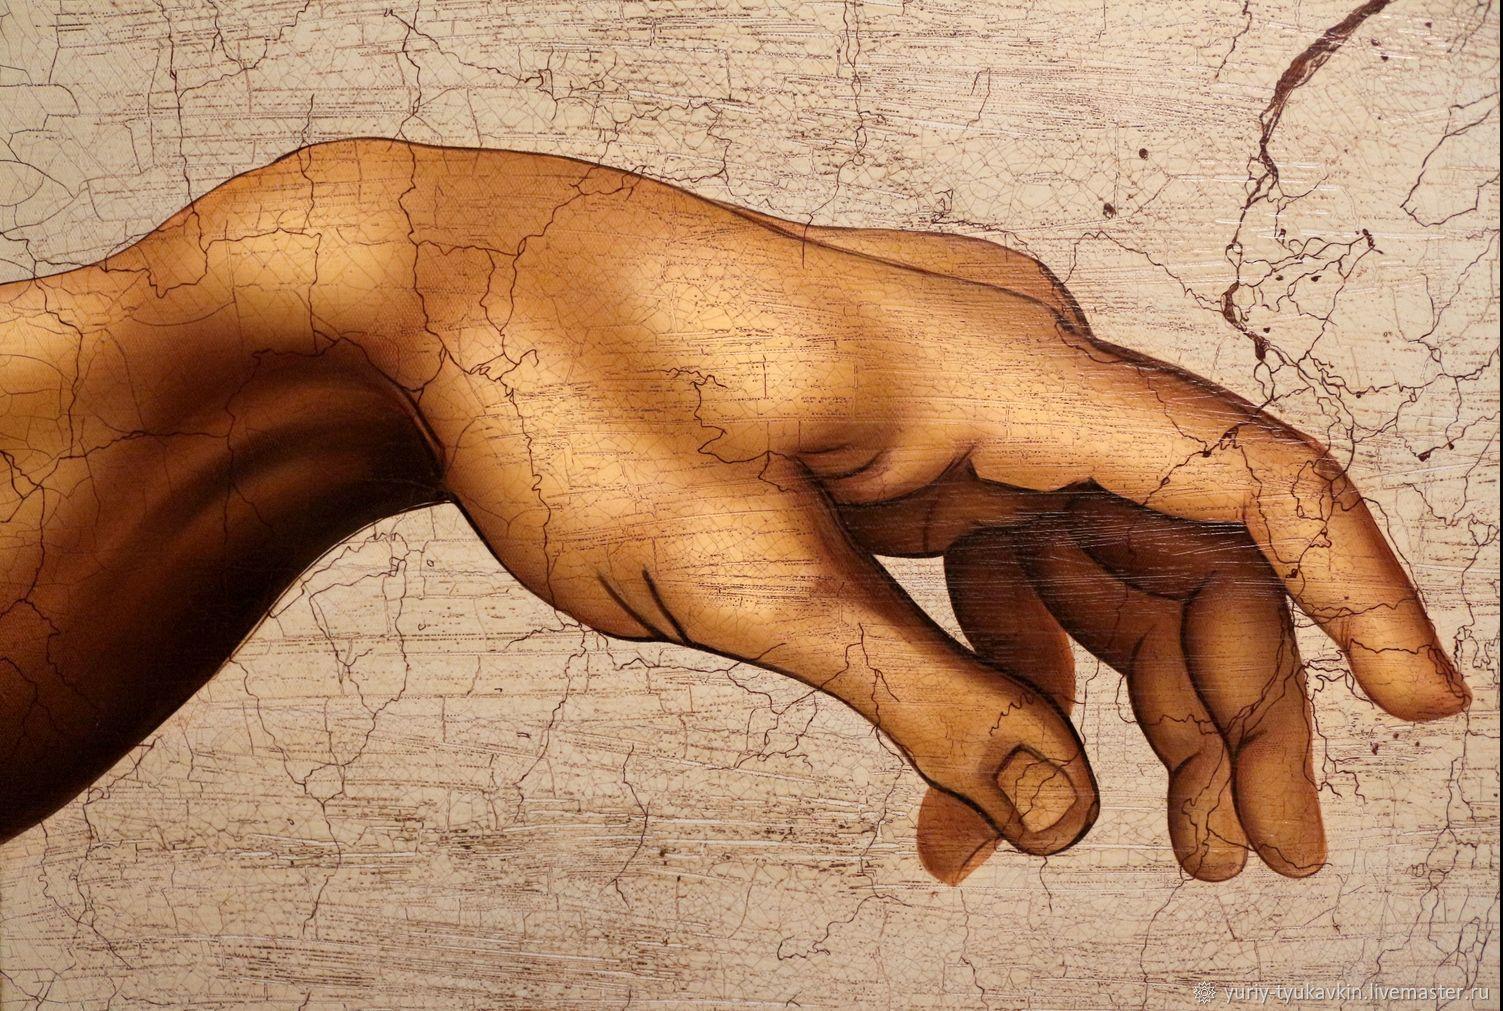 Возникновения картин. Микеланджело Сотворение Адама. "Сотворение Адама" Микеланджело, 1511. Микеланджело Буонарроти Сотворение Адама руки. Сикстинская капелла Сотворение Адама руки.